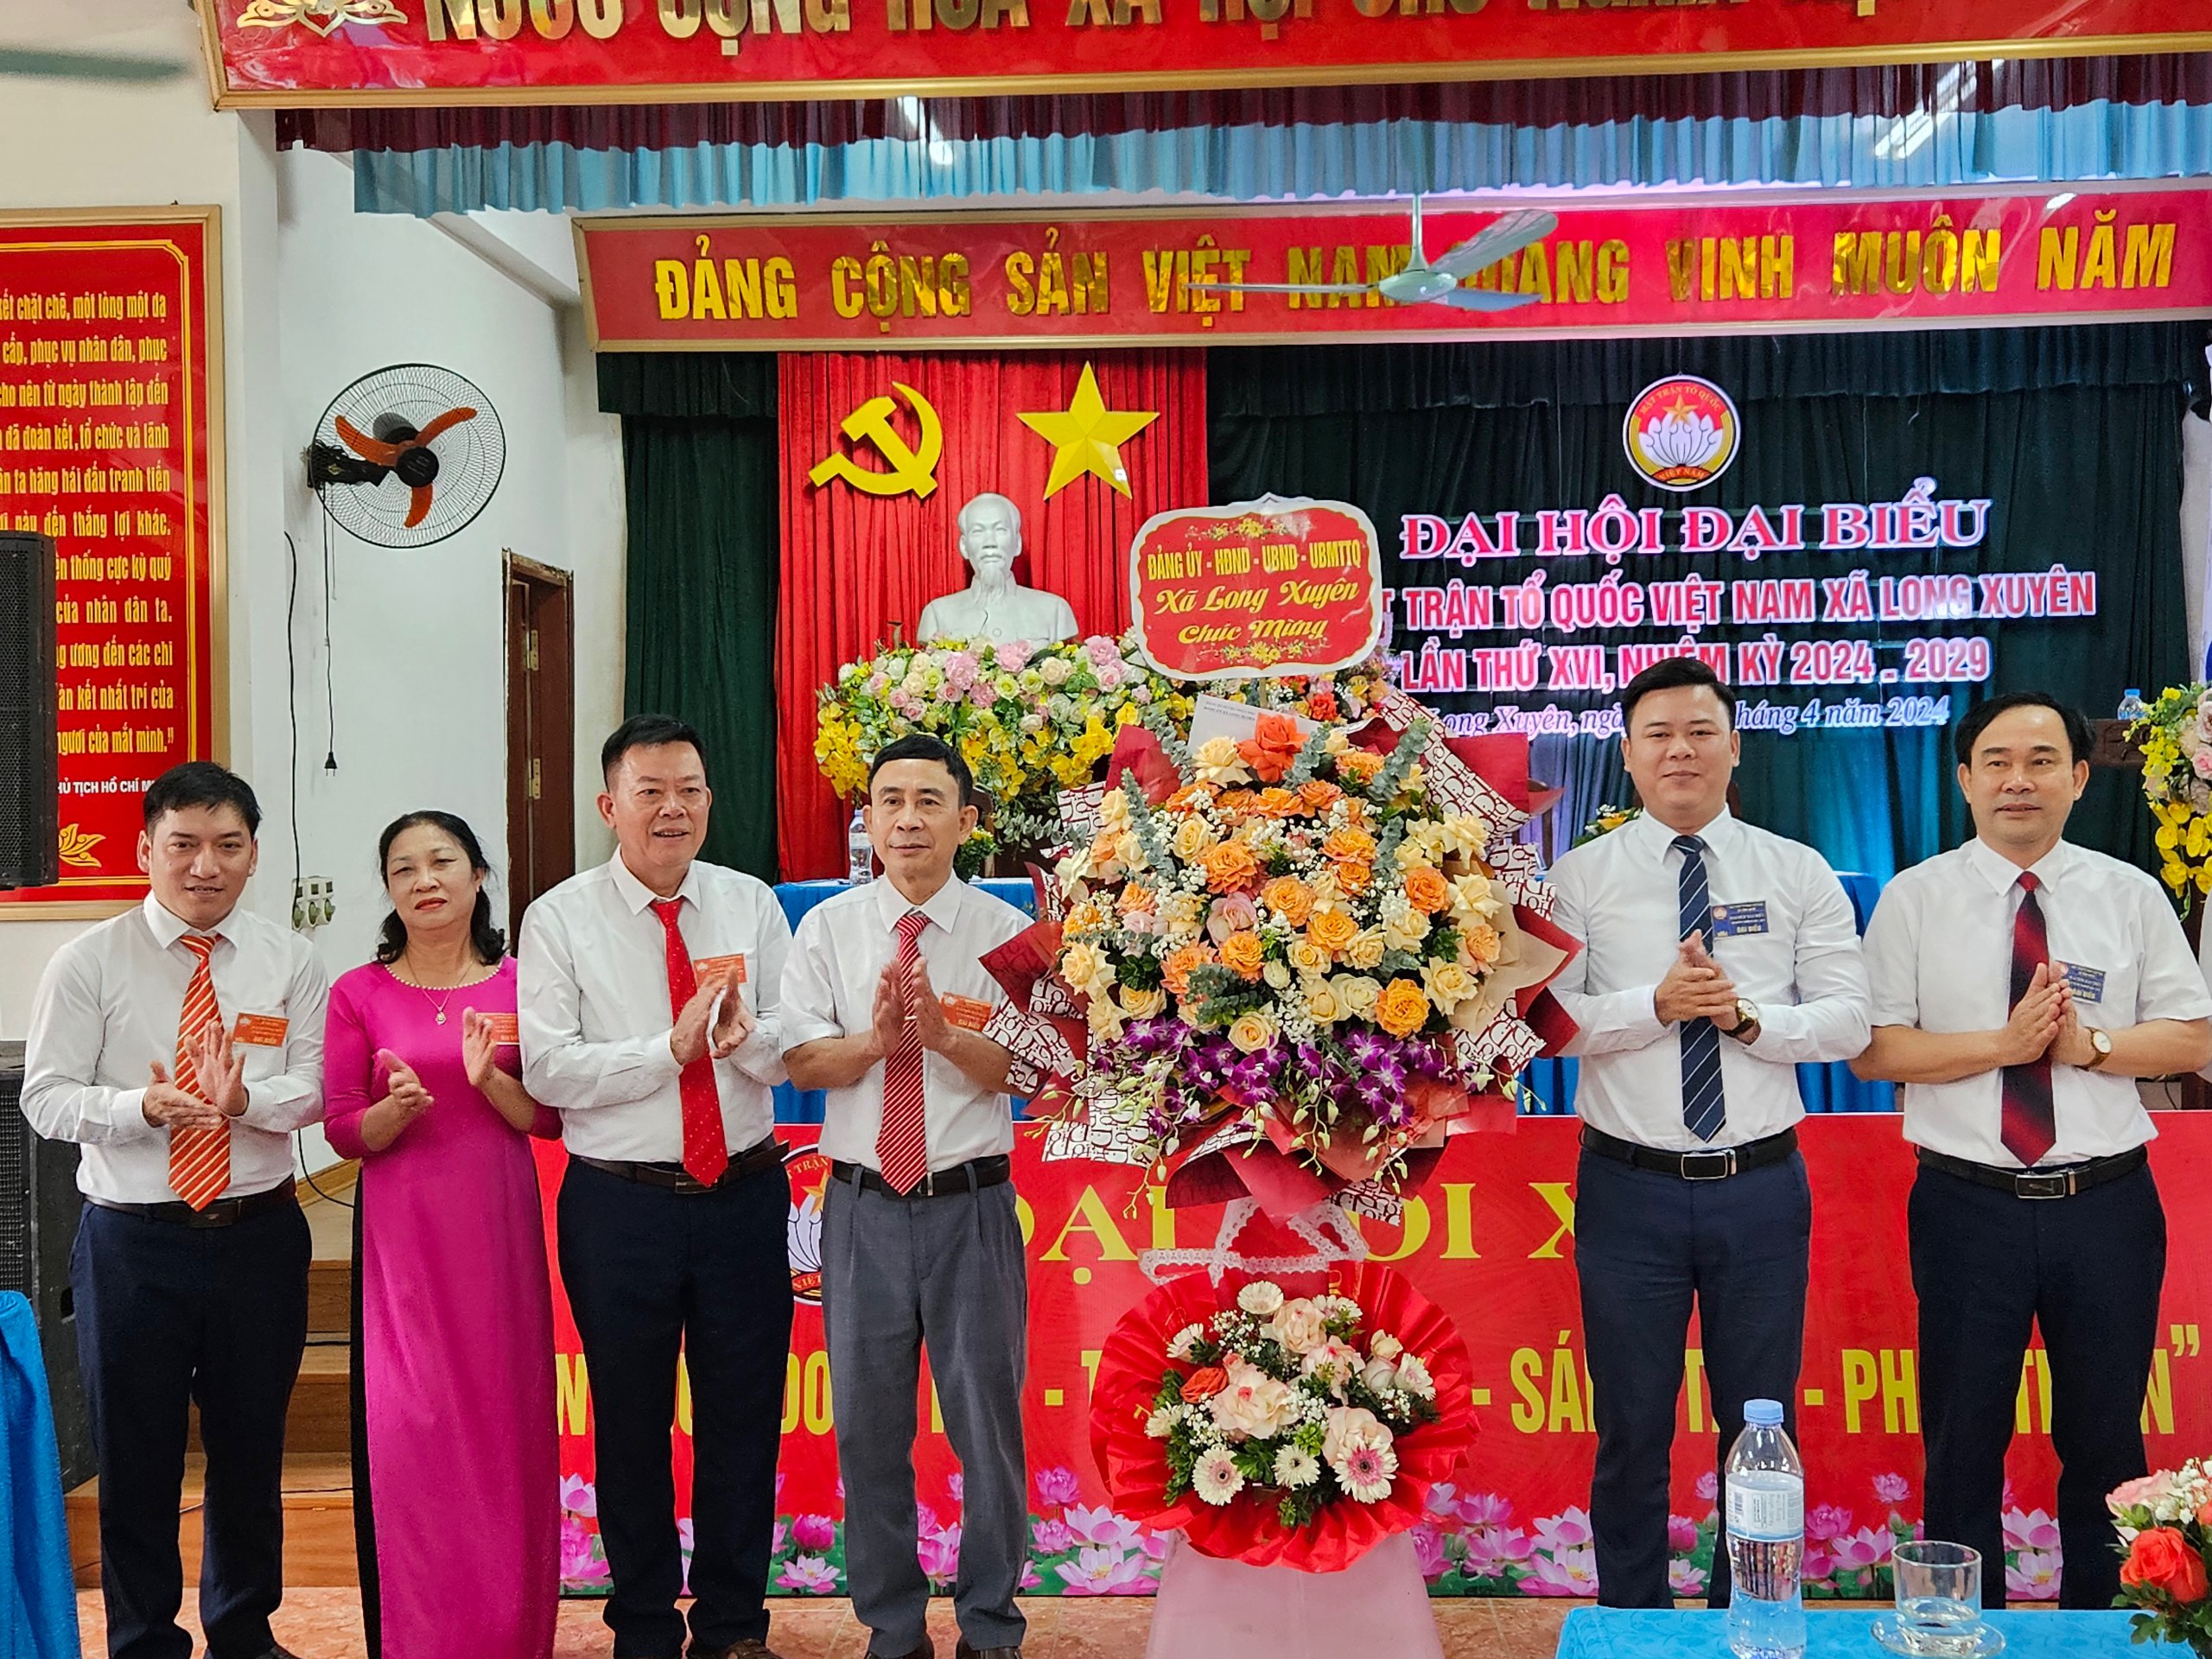 Uỷ ban Mặt trận Tổ quốc Việt Nam xã Long Xuyên tổ chức Đại hội đại biểu MTTQ xã Long Xuyên lần thứ XVI, nhiệm kỳ 2024-2039.